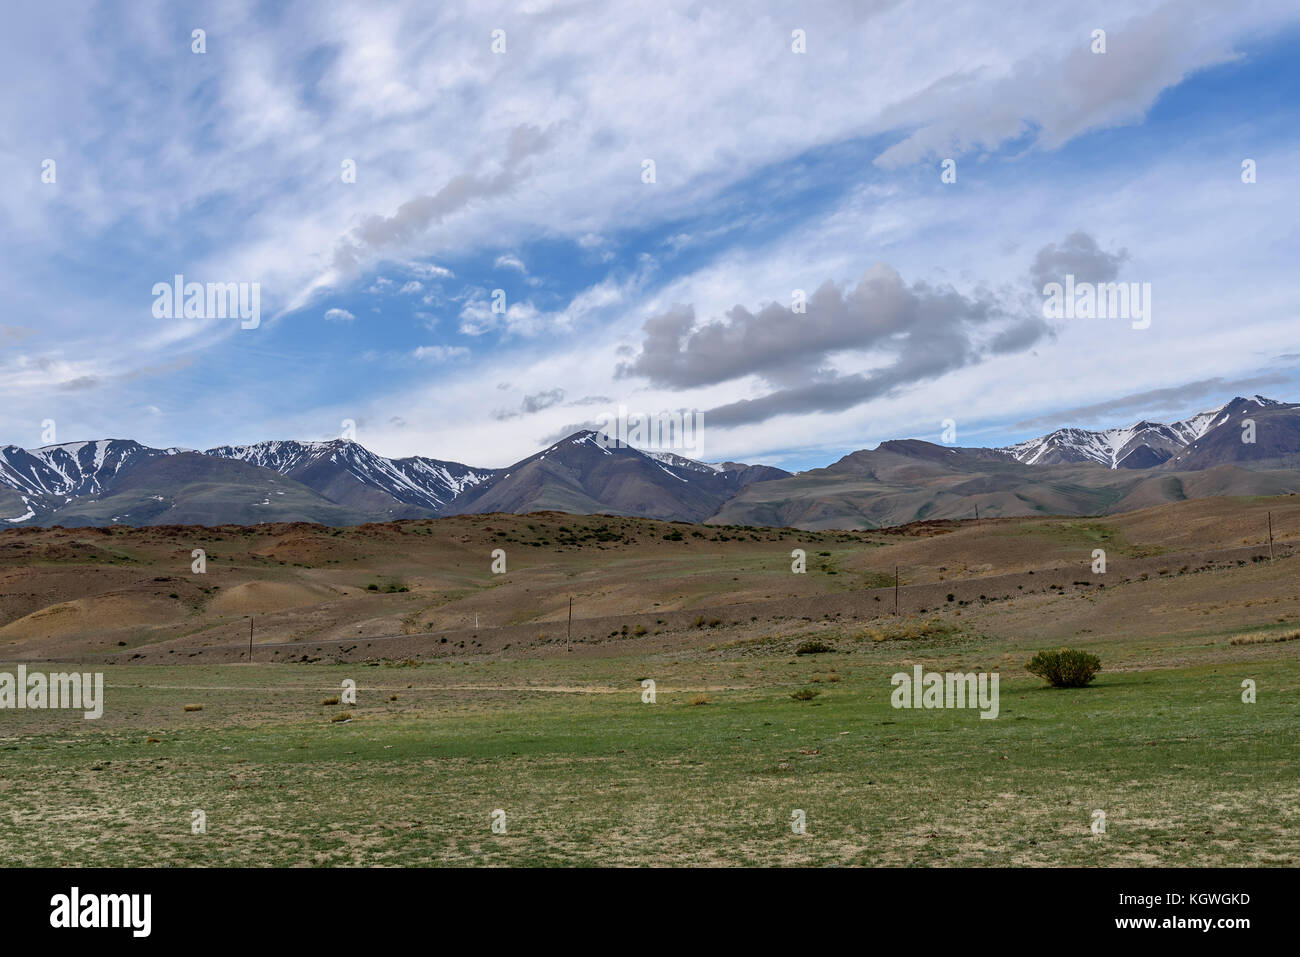 Die malerischen Steppe, Wüste, Landschaft mit Bergen und dem Trockenen mit spärlicher Vegetation auf einem Hintergrund von blauem Himmel und Wolken Stockfoto